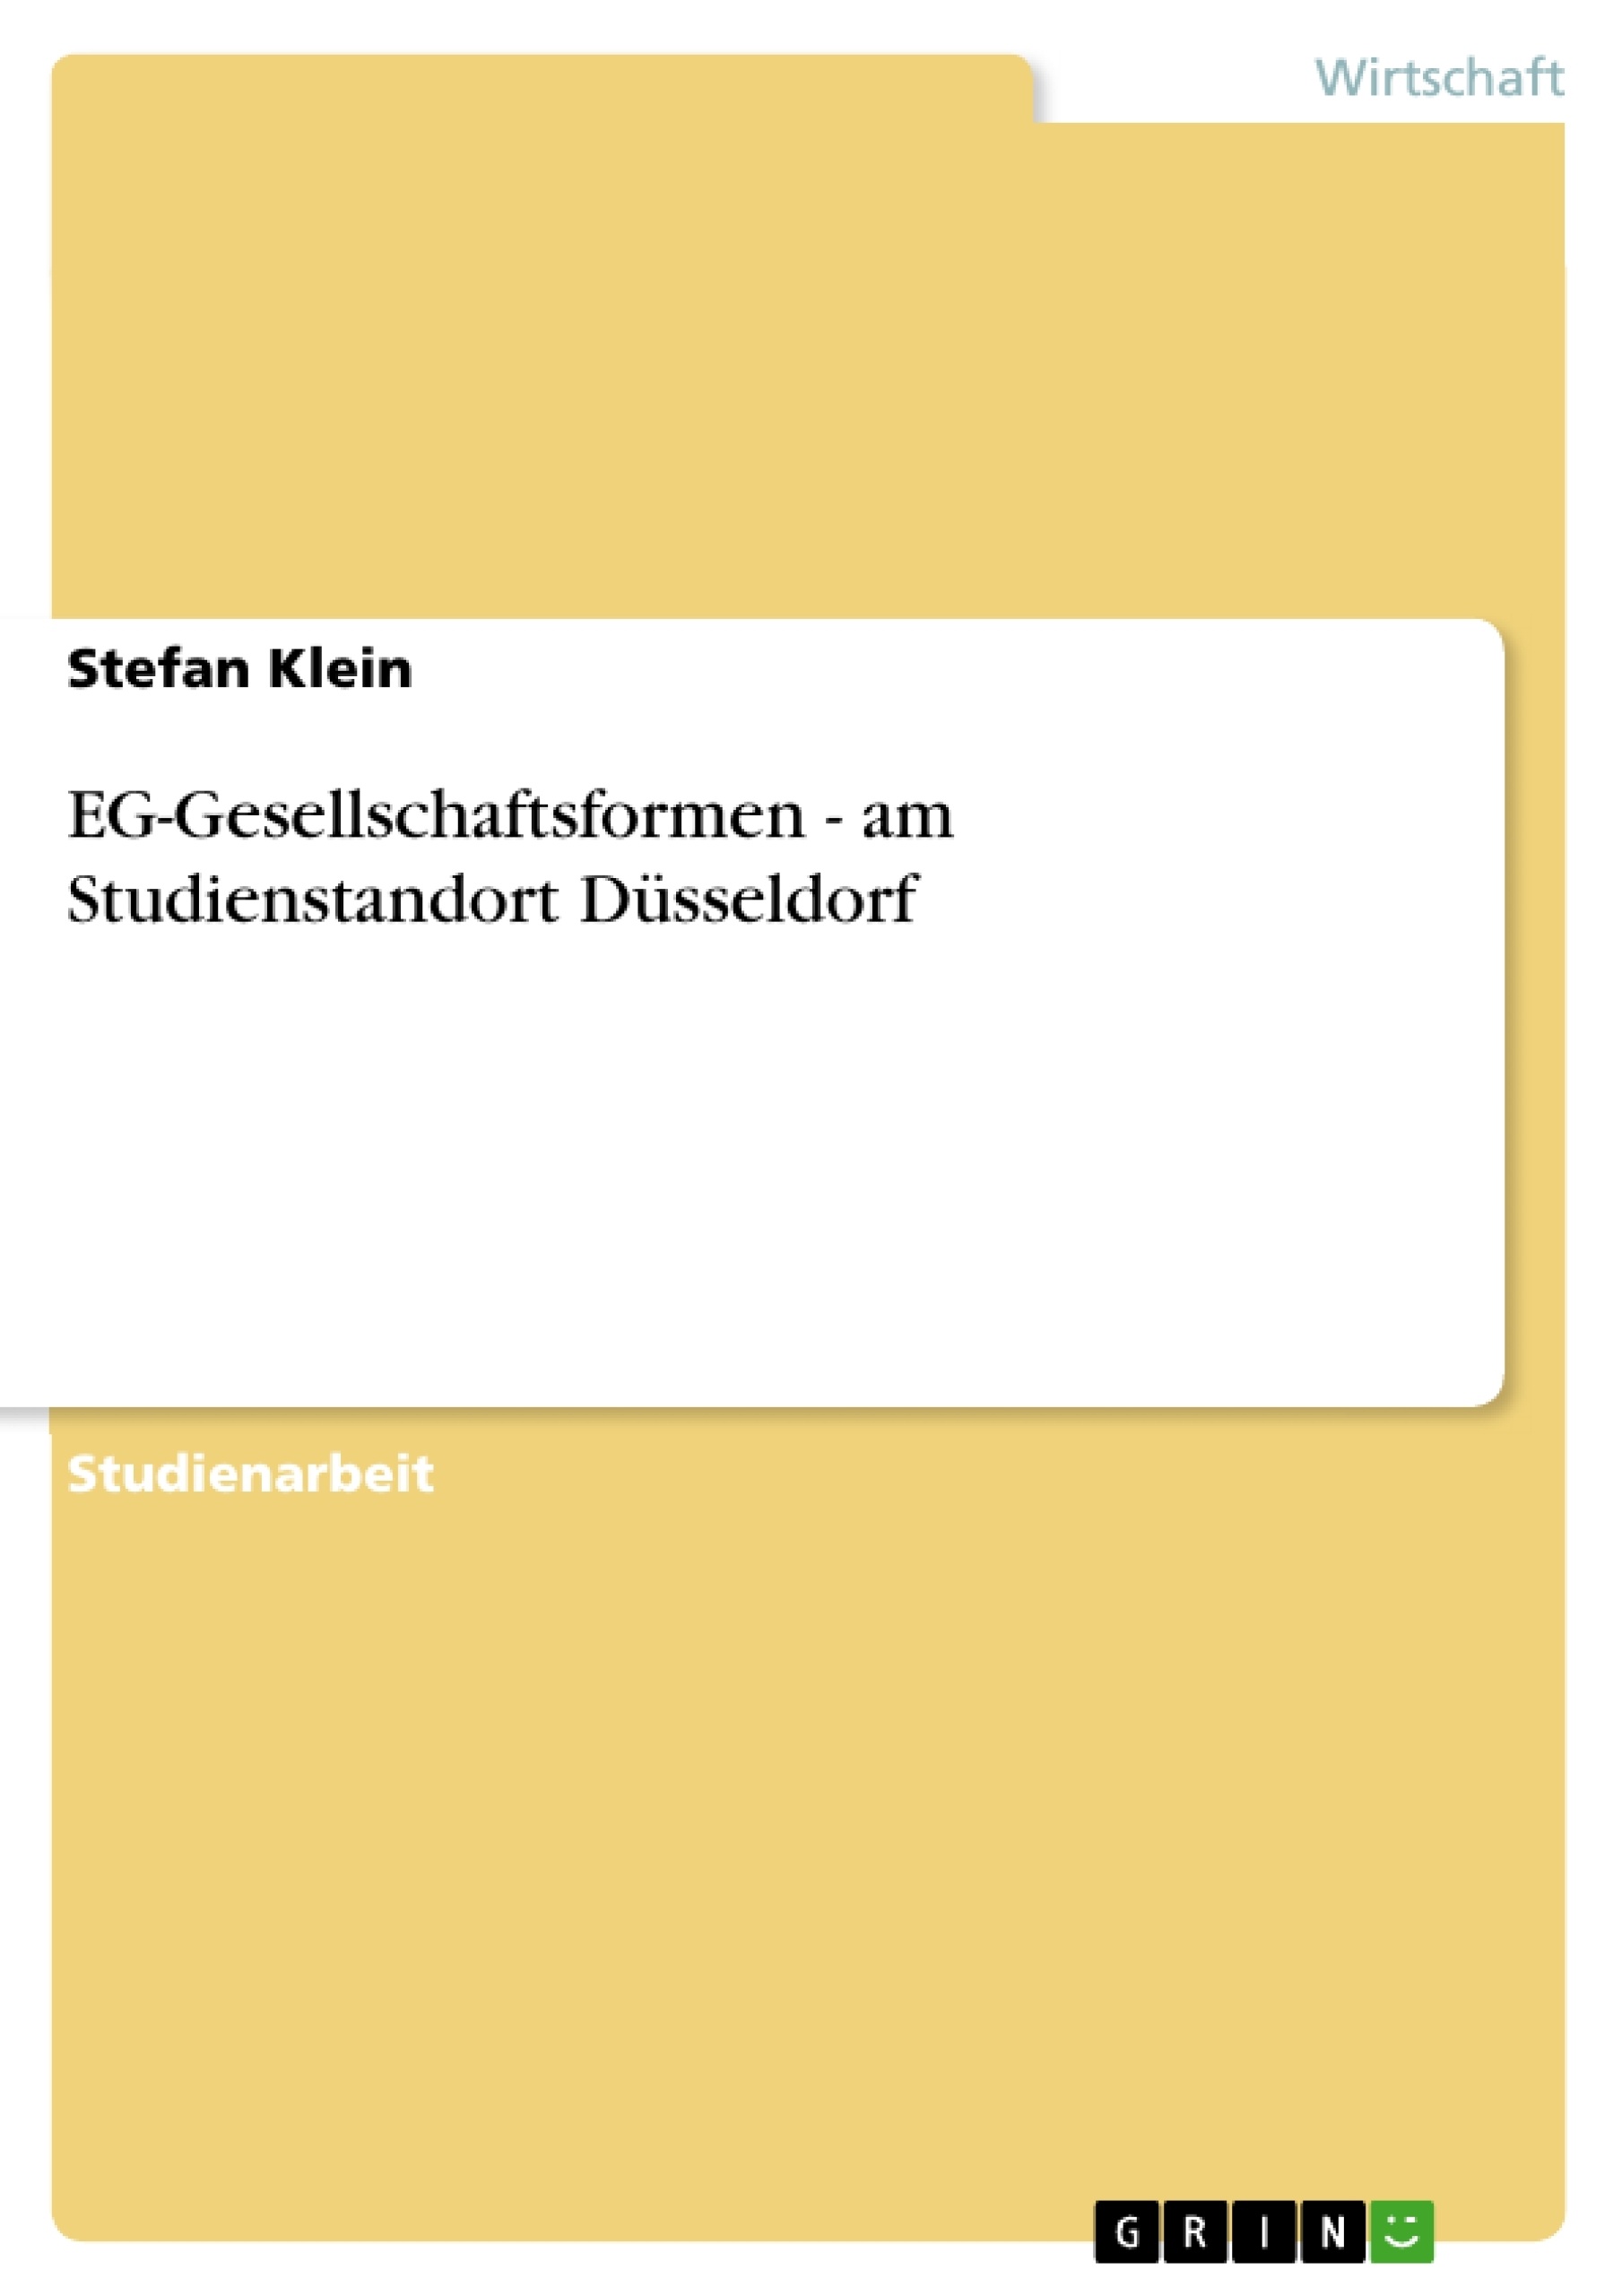 Title: EG-Gesellschaftsformen - am Studienstandort Düsseldorf